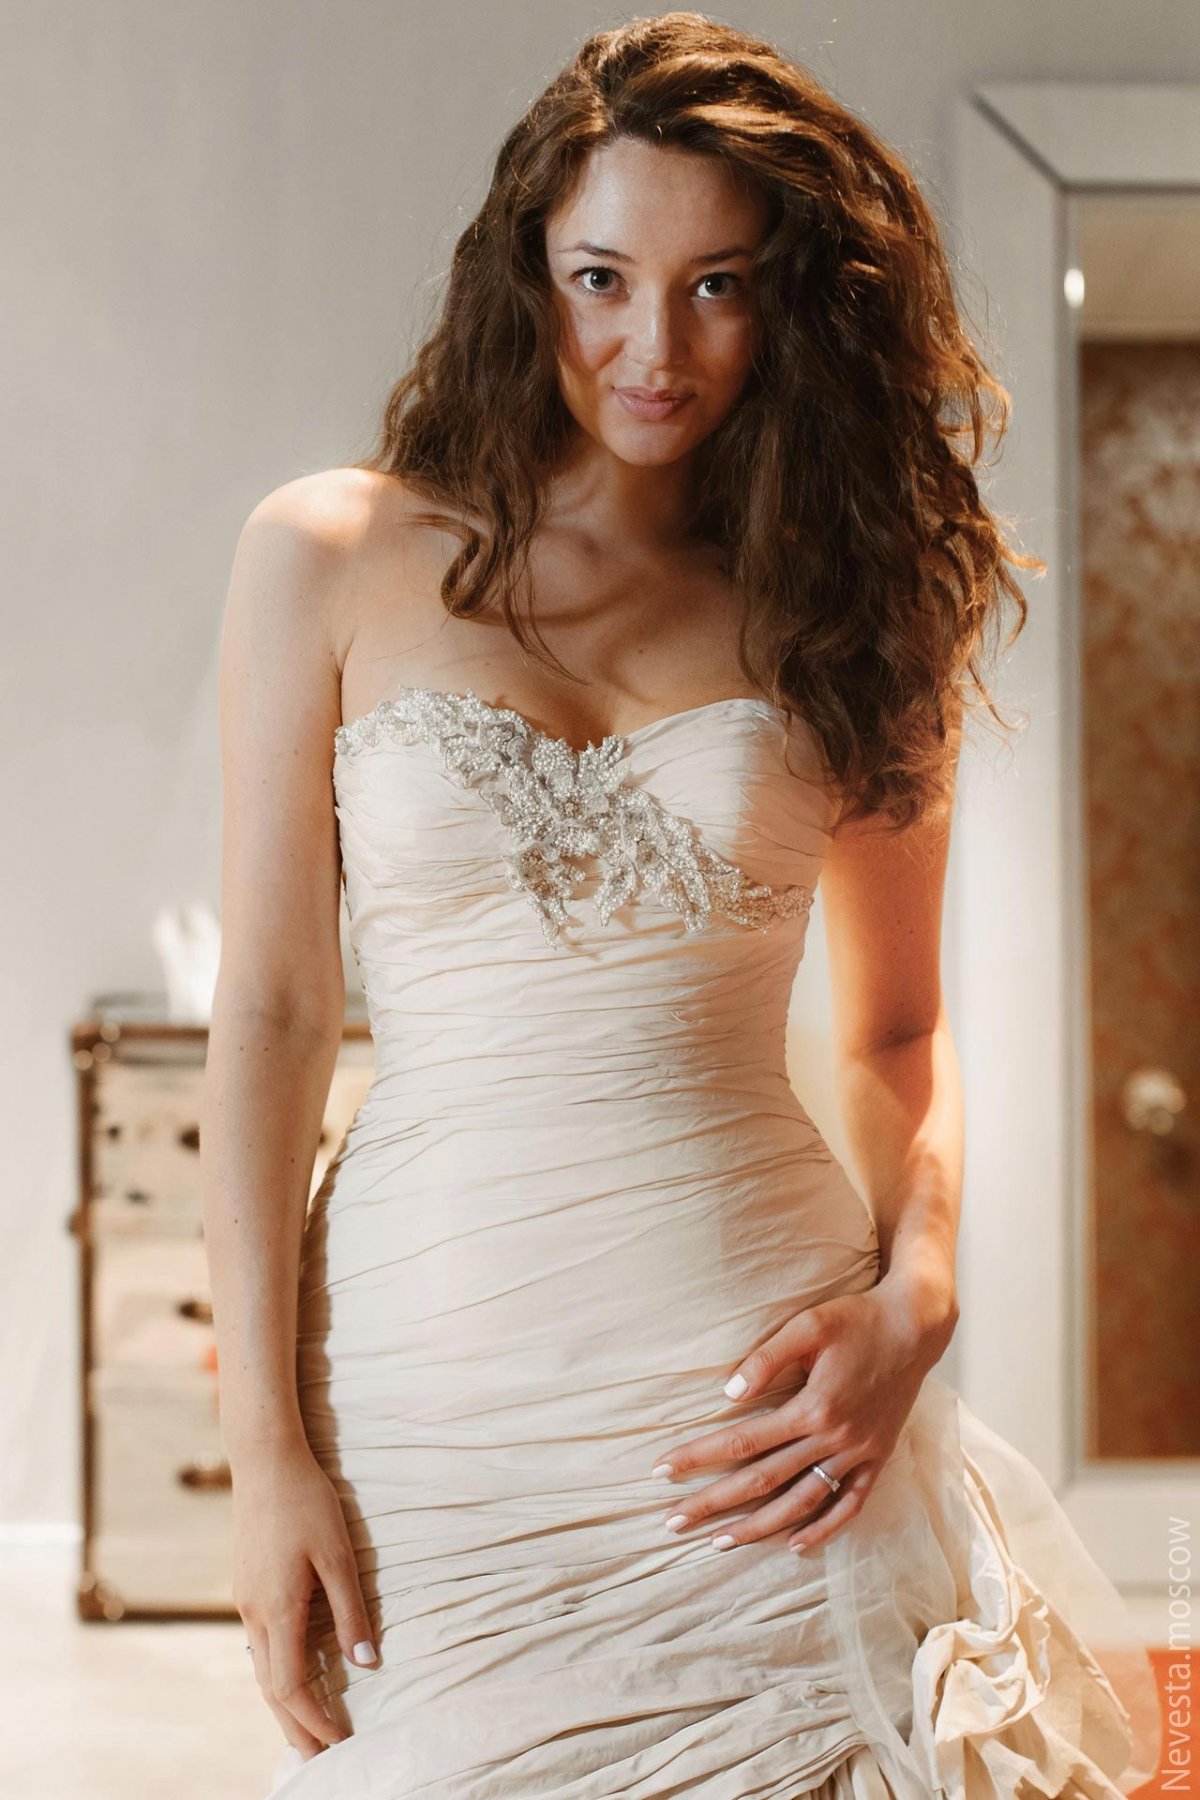 Рената Байкова примеряет свадебное платье фото 5